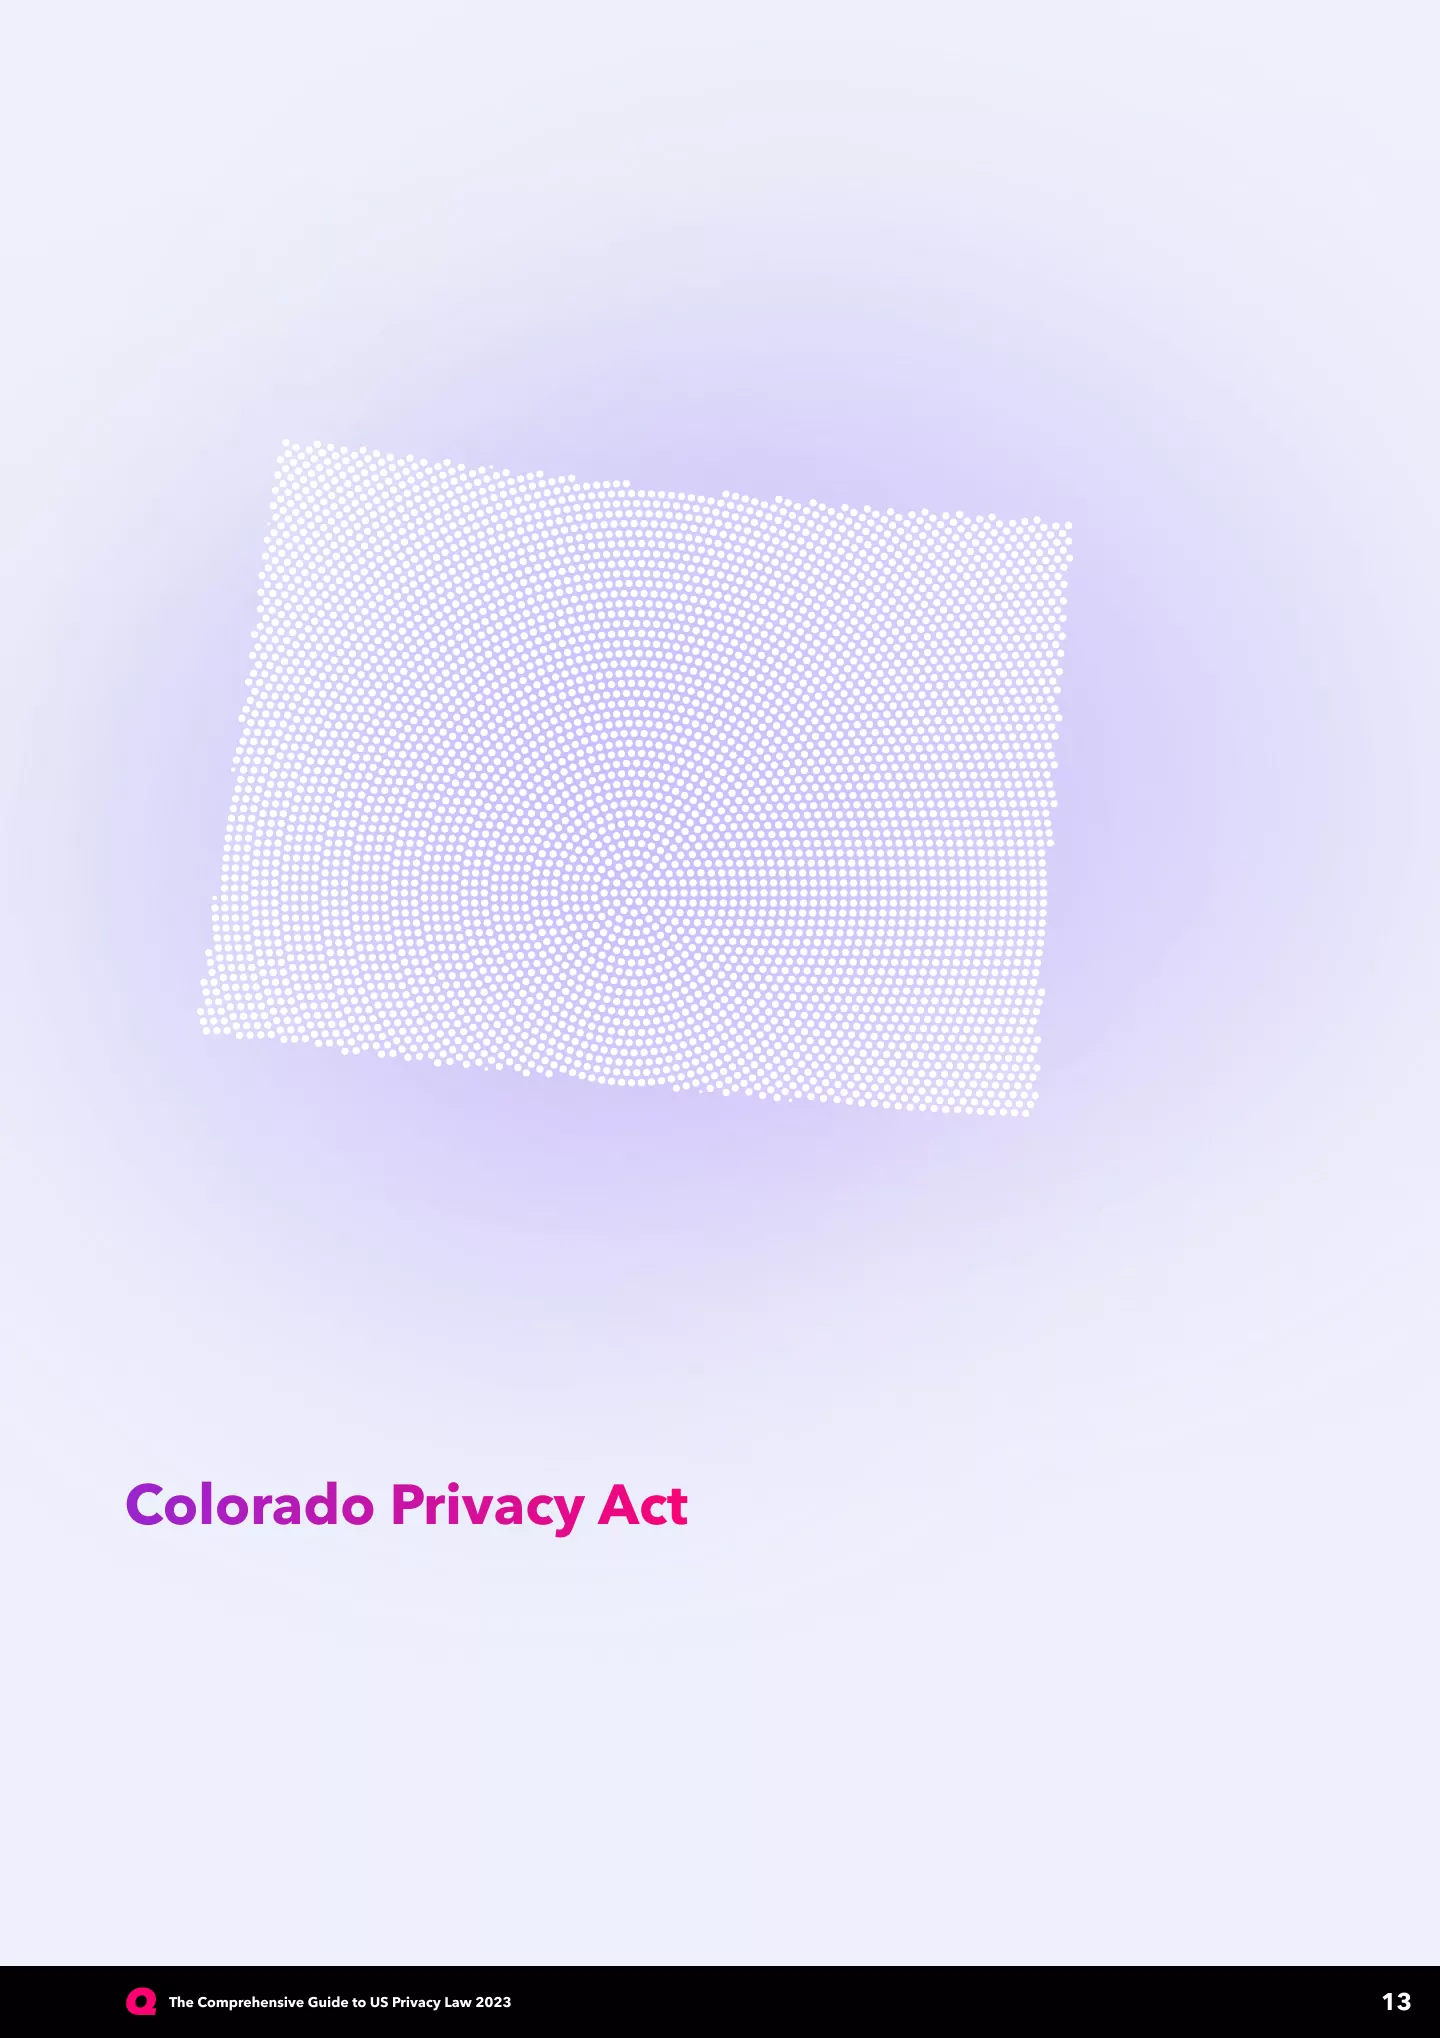 comprehensive-guide-US-privacy-law-2023-Colorado